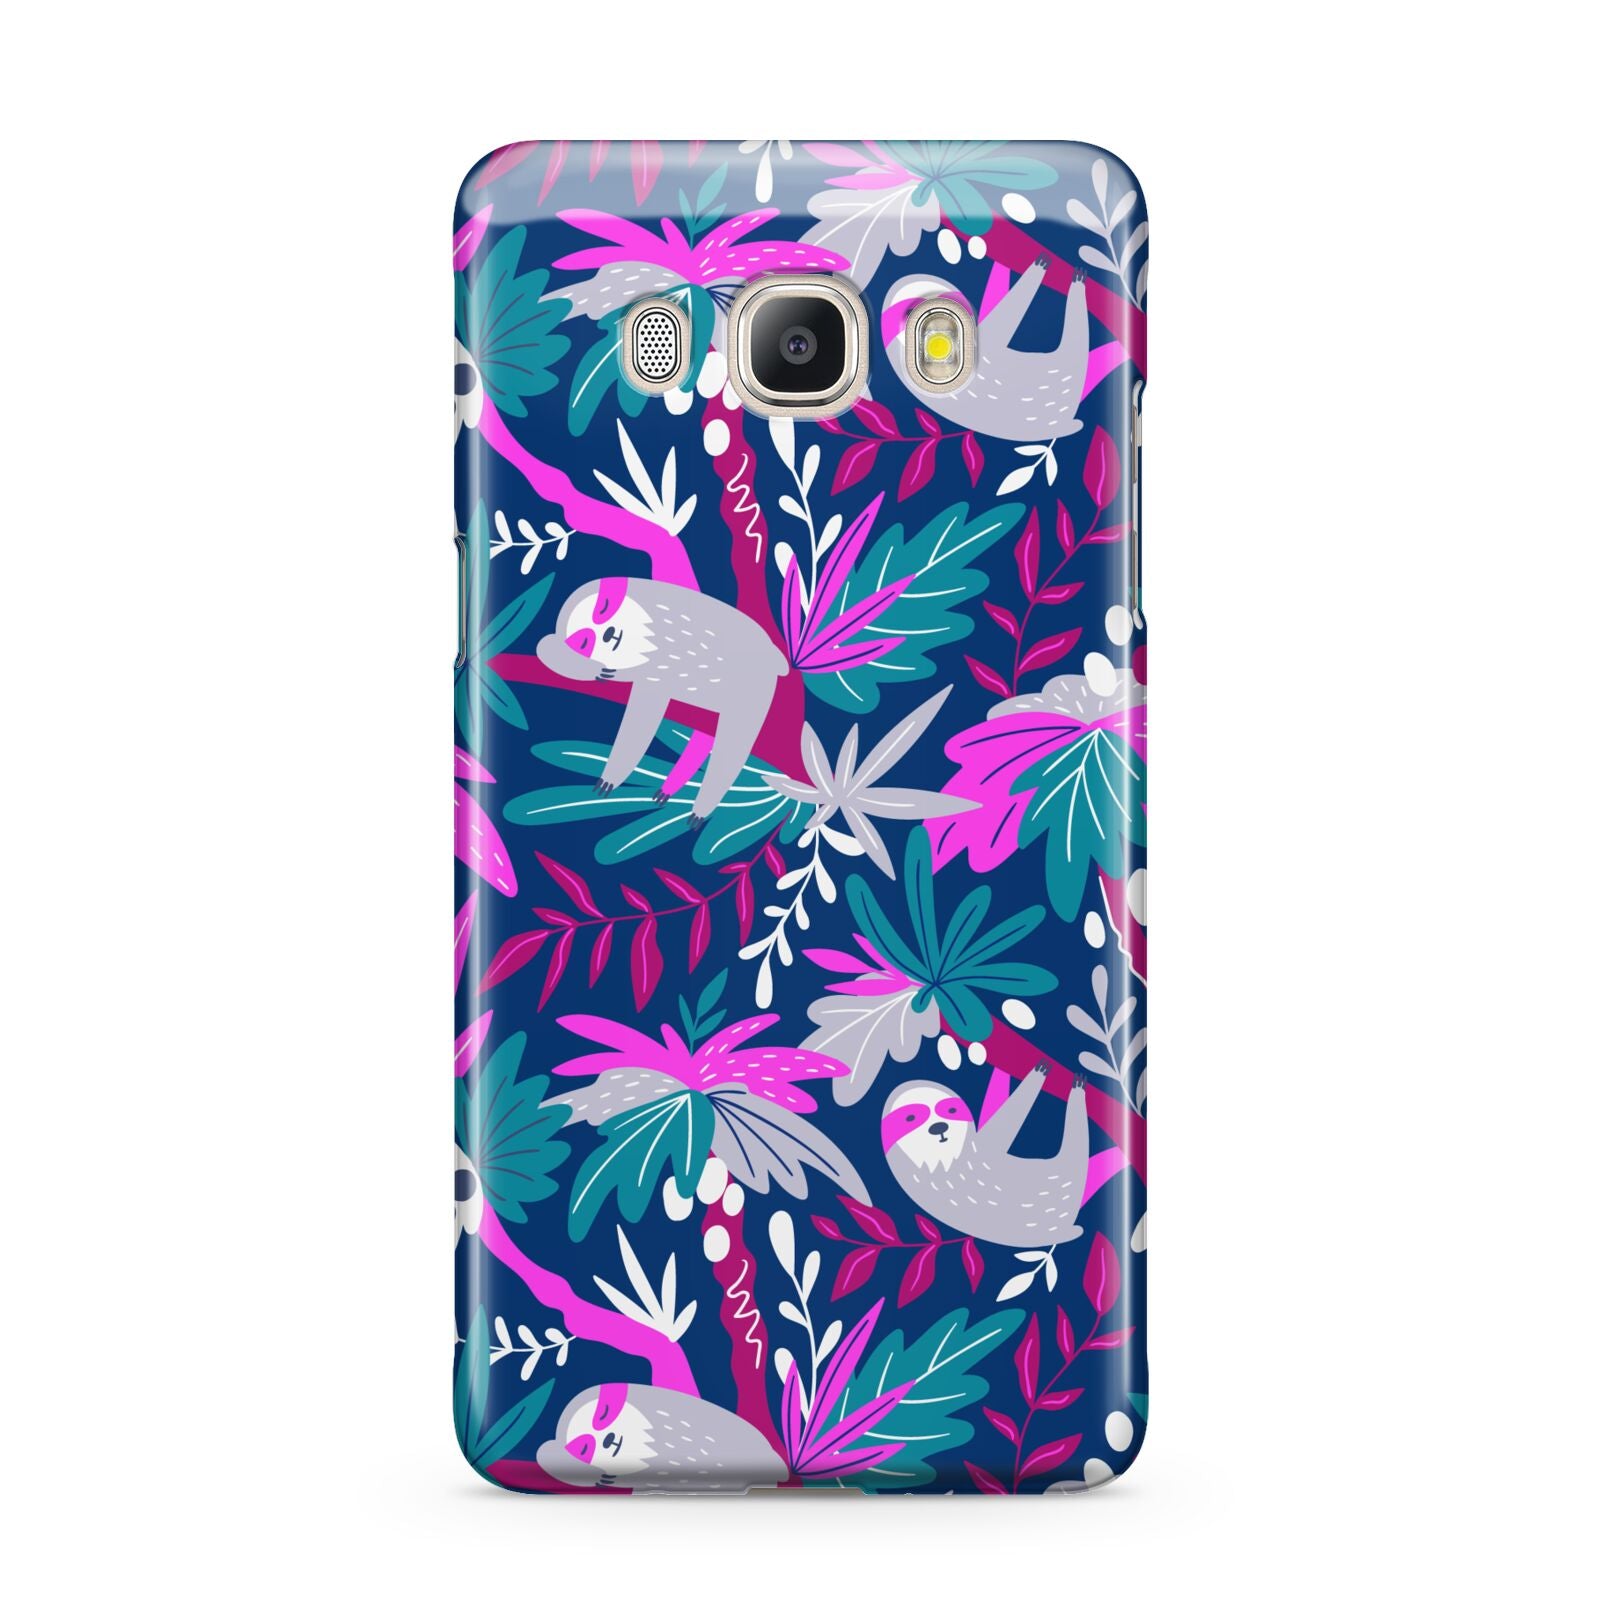 Sloth Samsung Galaxy J5 2016 Case